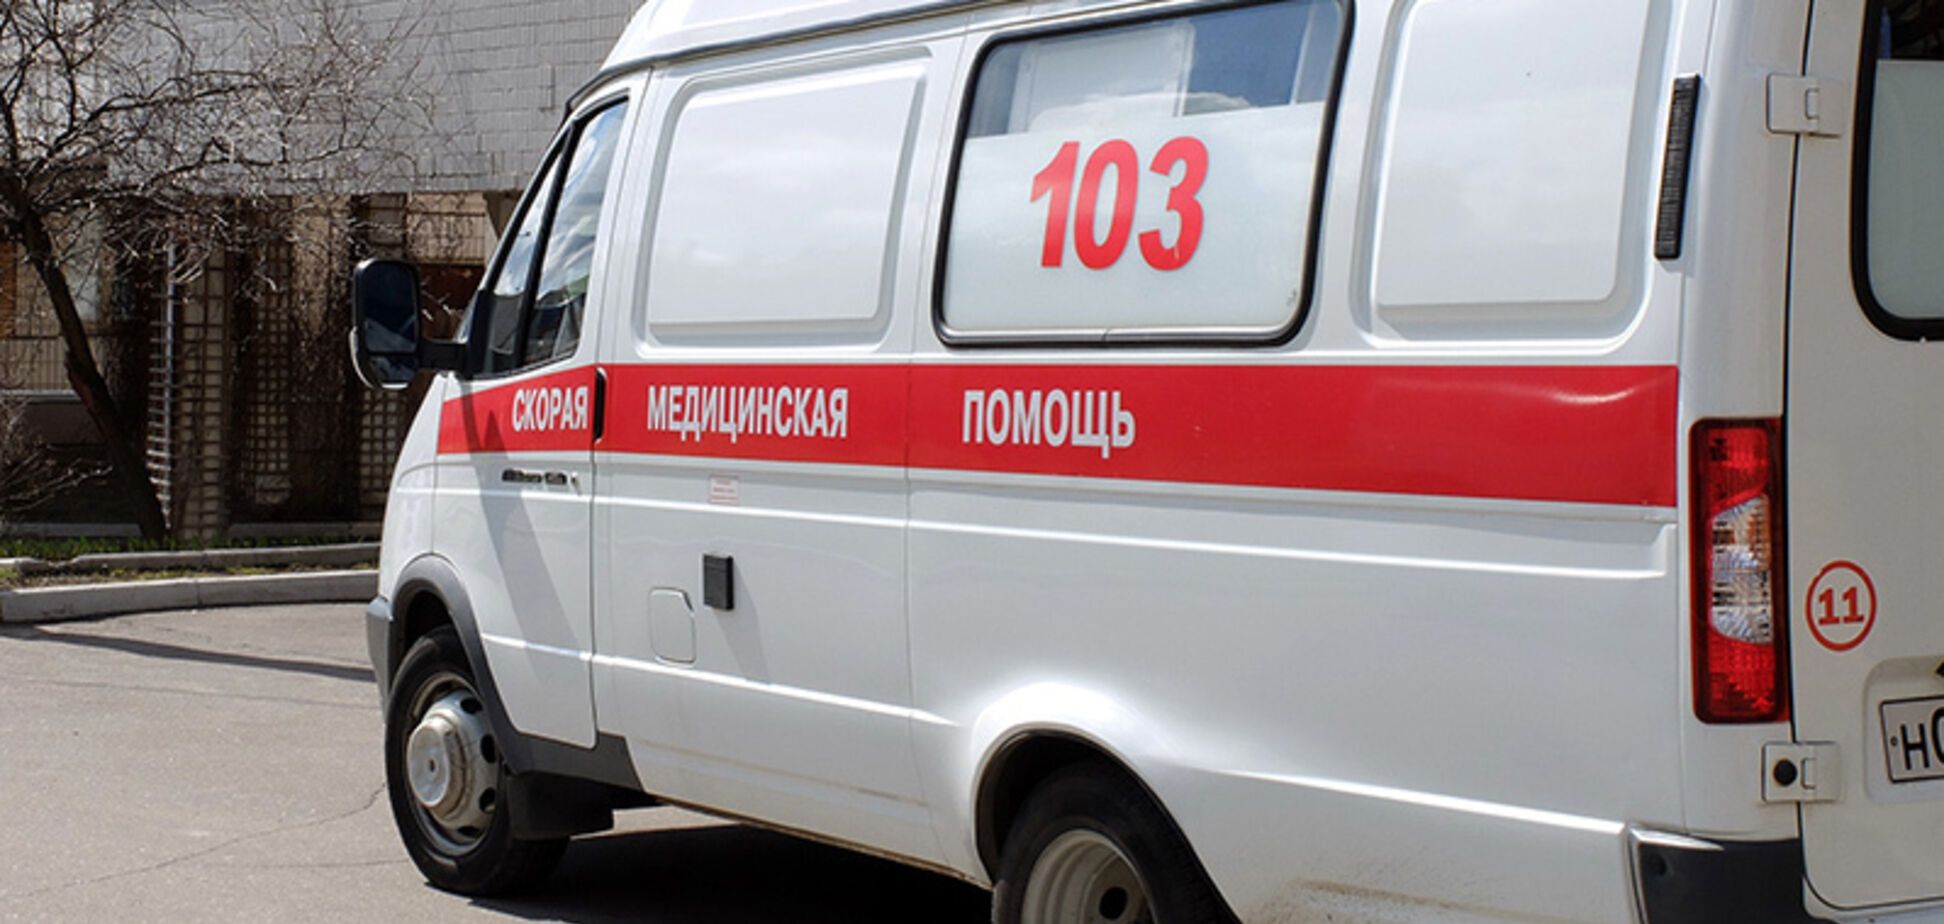  Вырезали две семьи с ребенком: в России произошло зверское массовое убийство